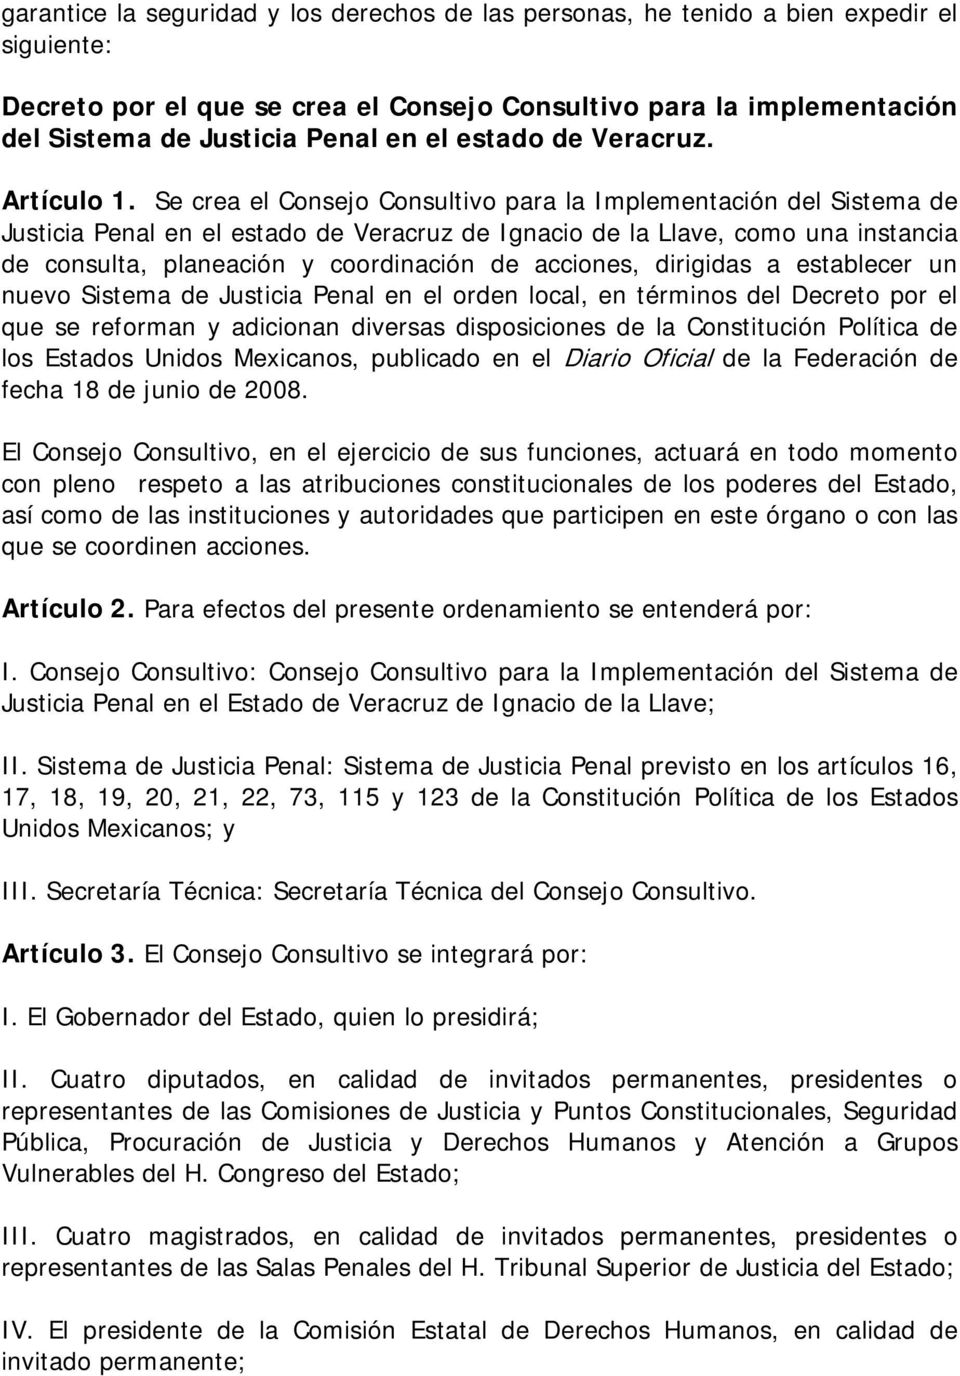 Se crea el Consejo Consultivo para la Implementación del Sistema de Justicia Penal en el estado de Veracruz de Ignacio de la Llave, como una instancia de consulta, planeación y coordinación de